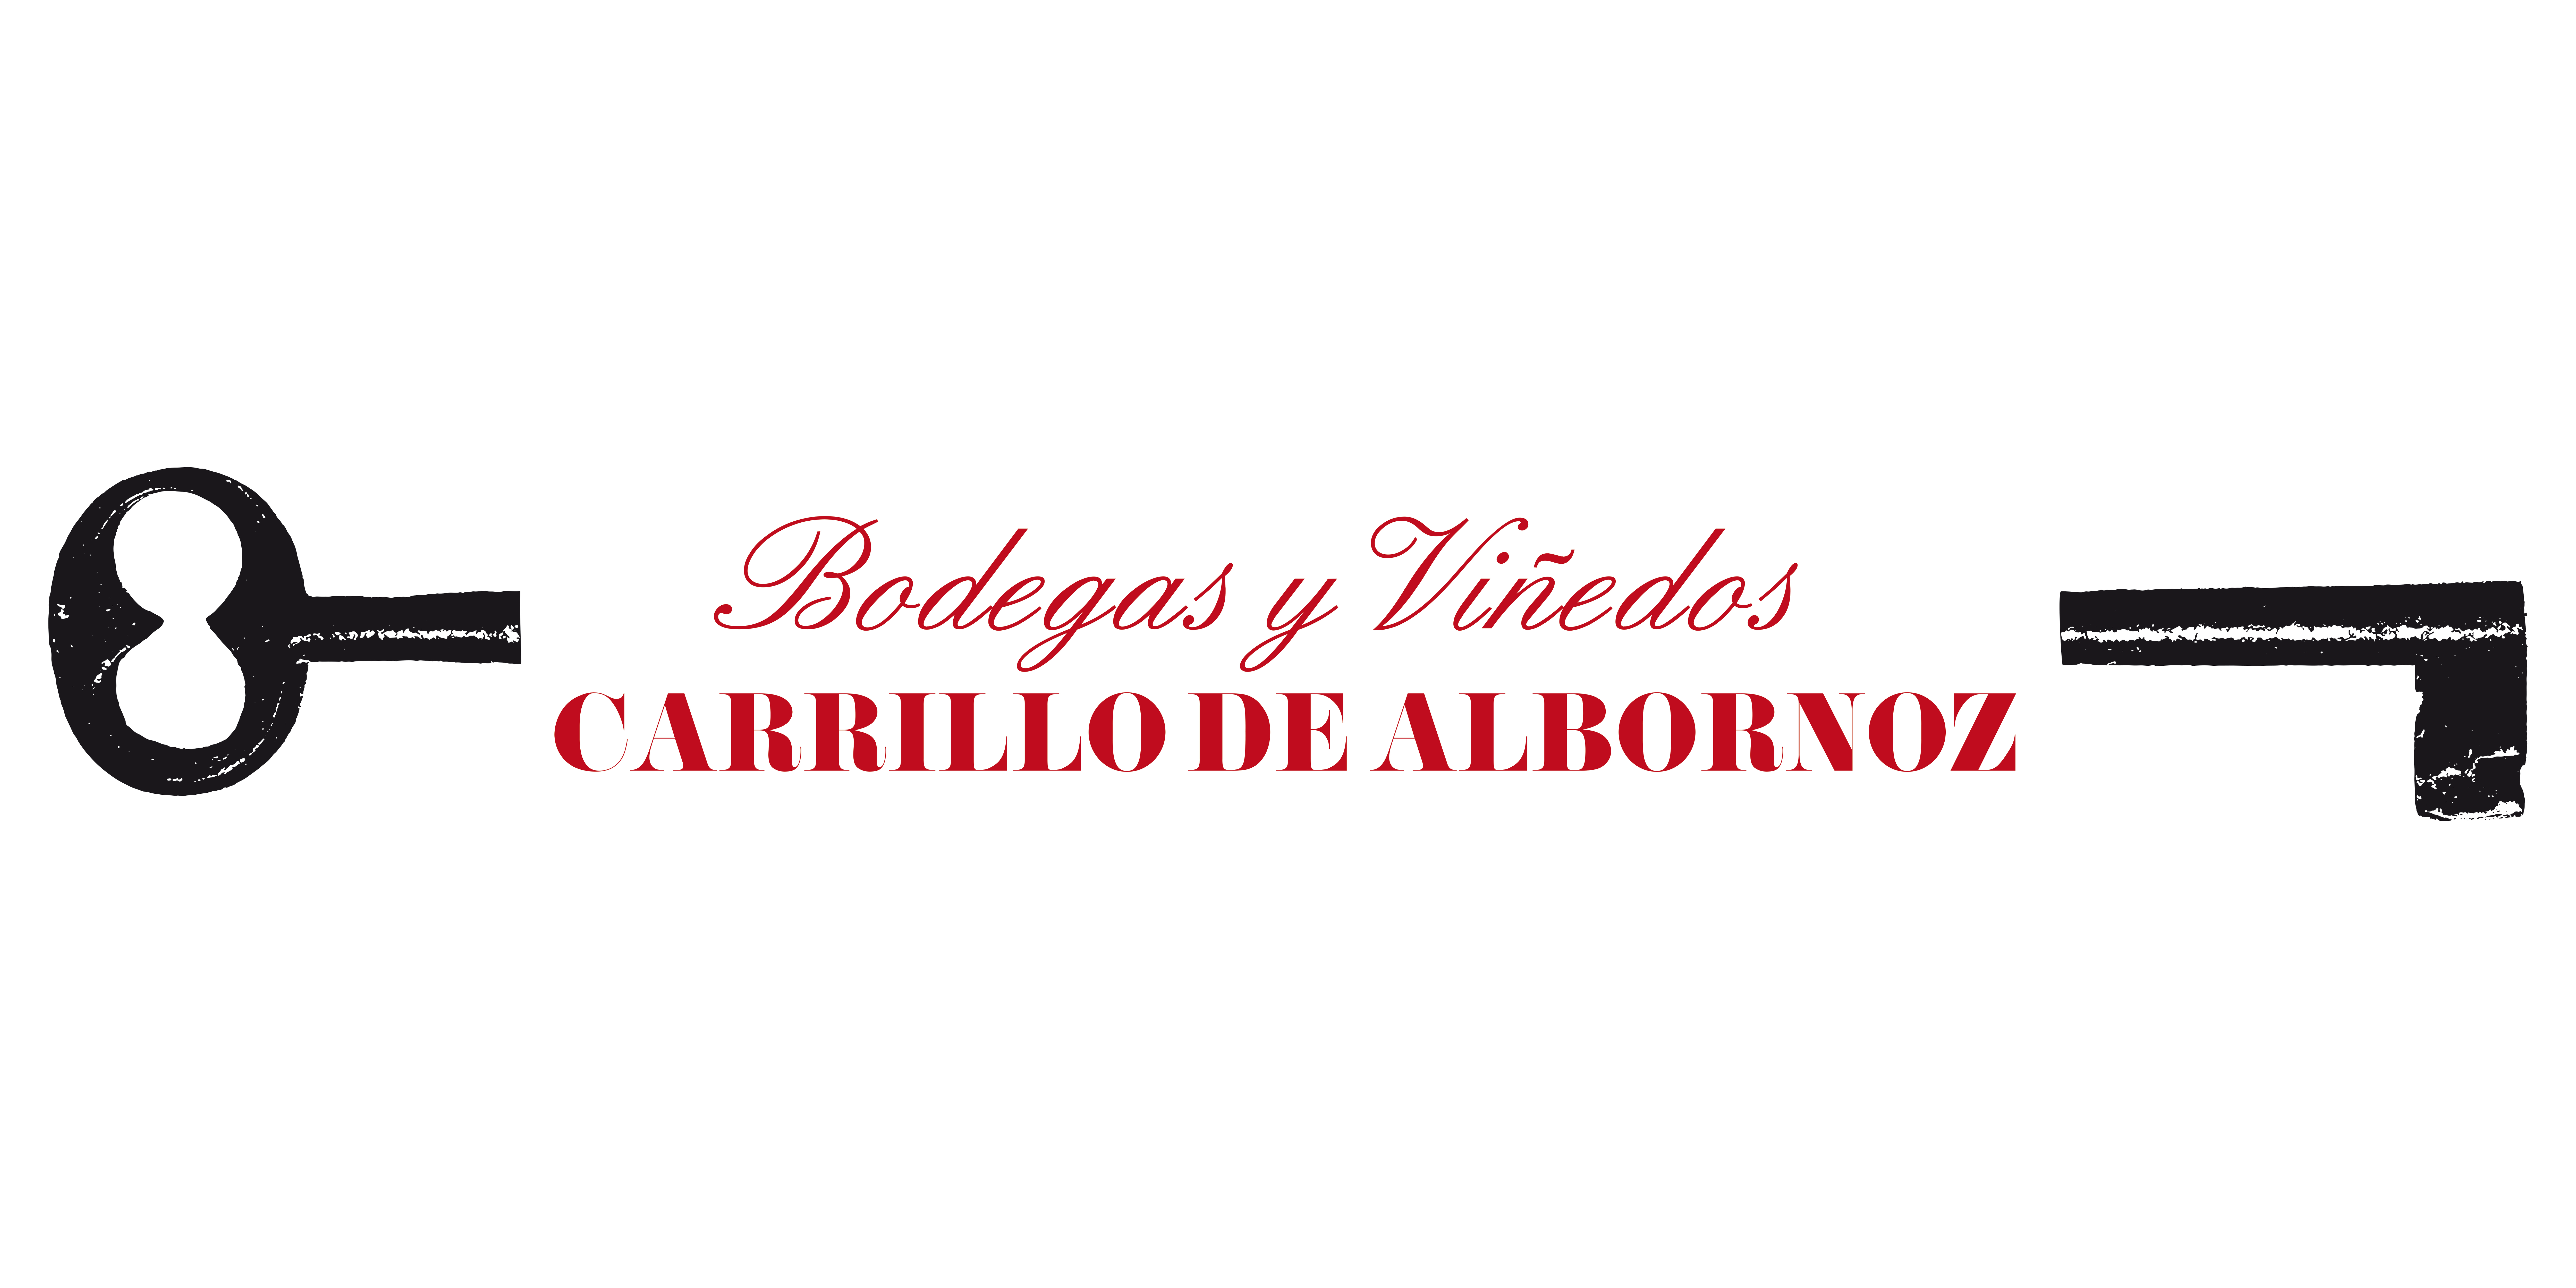 Bodegas Carrillo de Albornoz